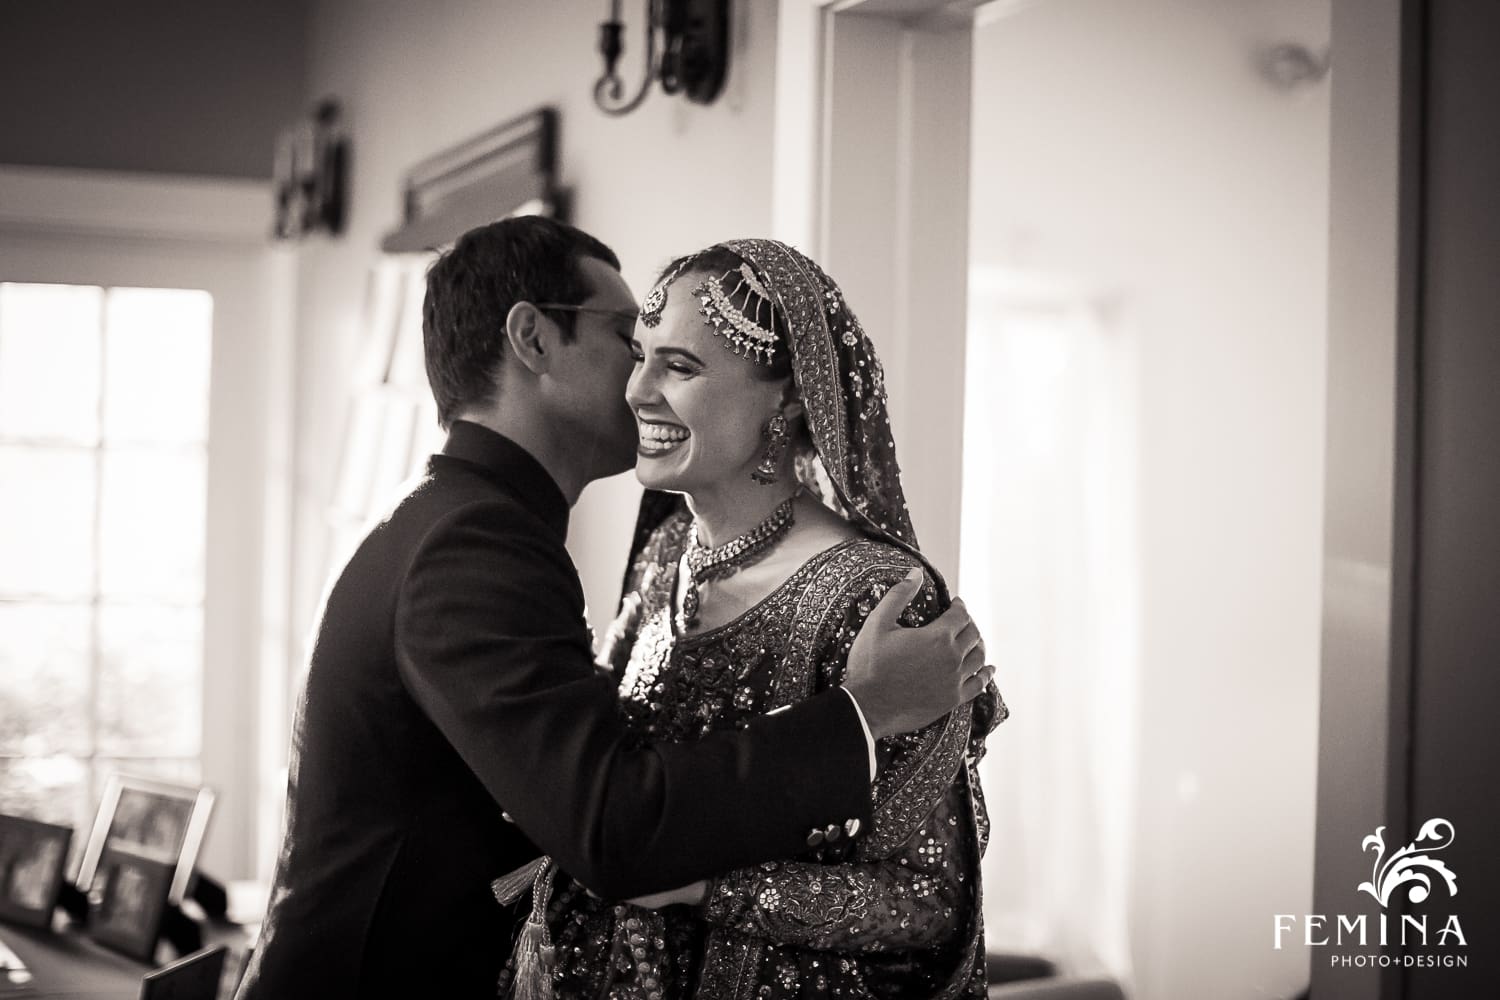 Pakistani Wedding Wedding Photographer